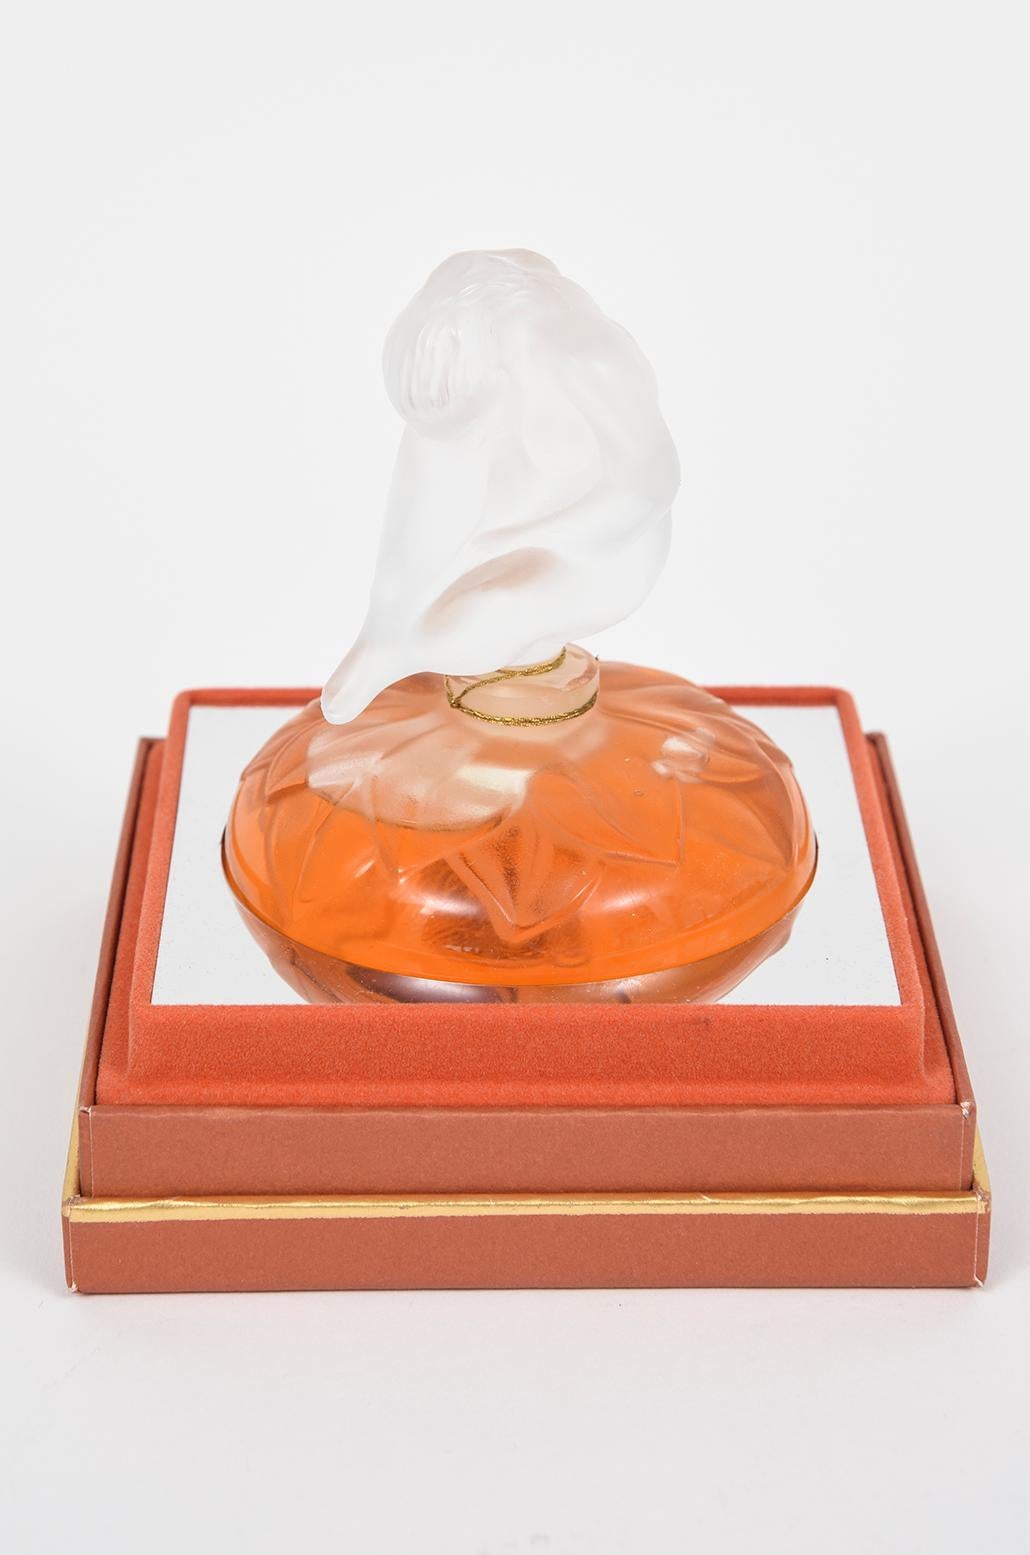 Le Nu Flacon Pure Pafum (Parfüm) Collection Limitierte und nummerierte Auflage Erstellt von Lalique im Jahr 1996. Es handelt sich um die Größe von 3 Unzen.  Die Flasche ist in jeder Hinsicht perfekt! Versiegelt und voll. Keine Chips, Risse, Kratzer